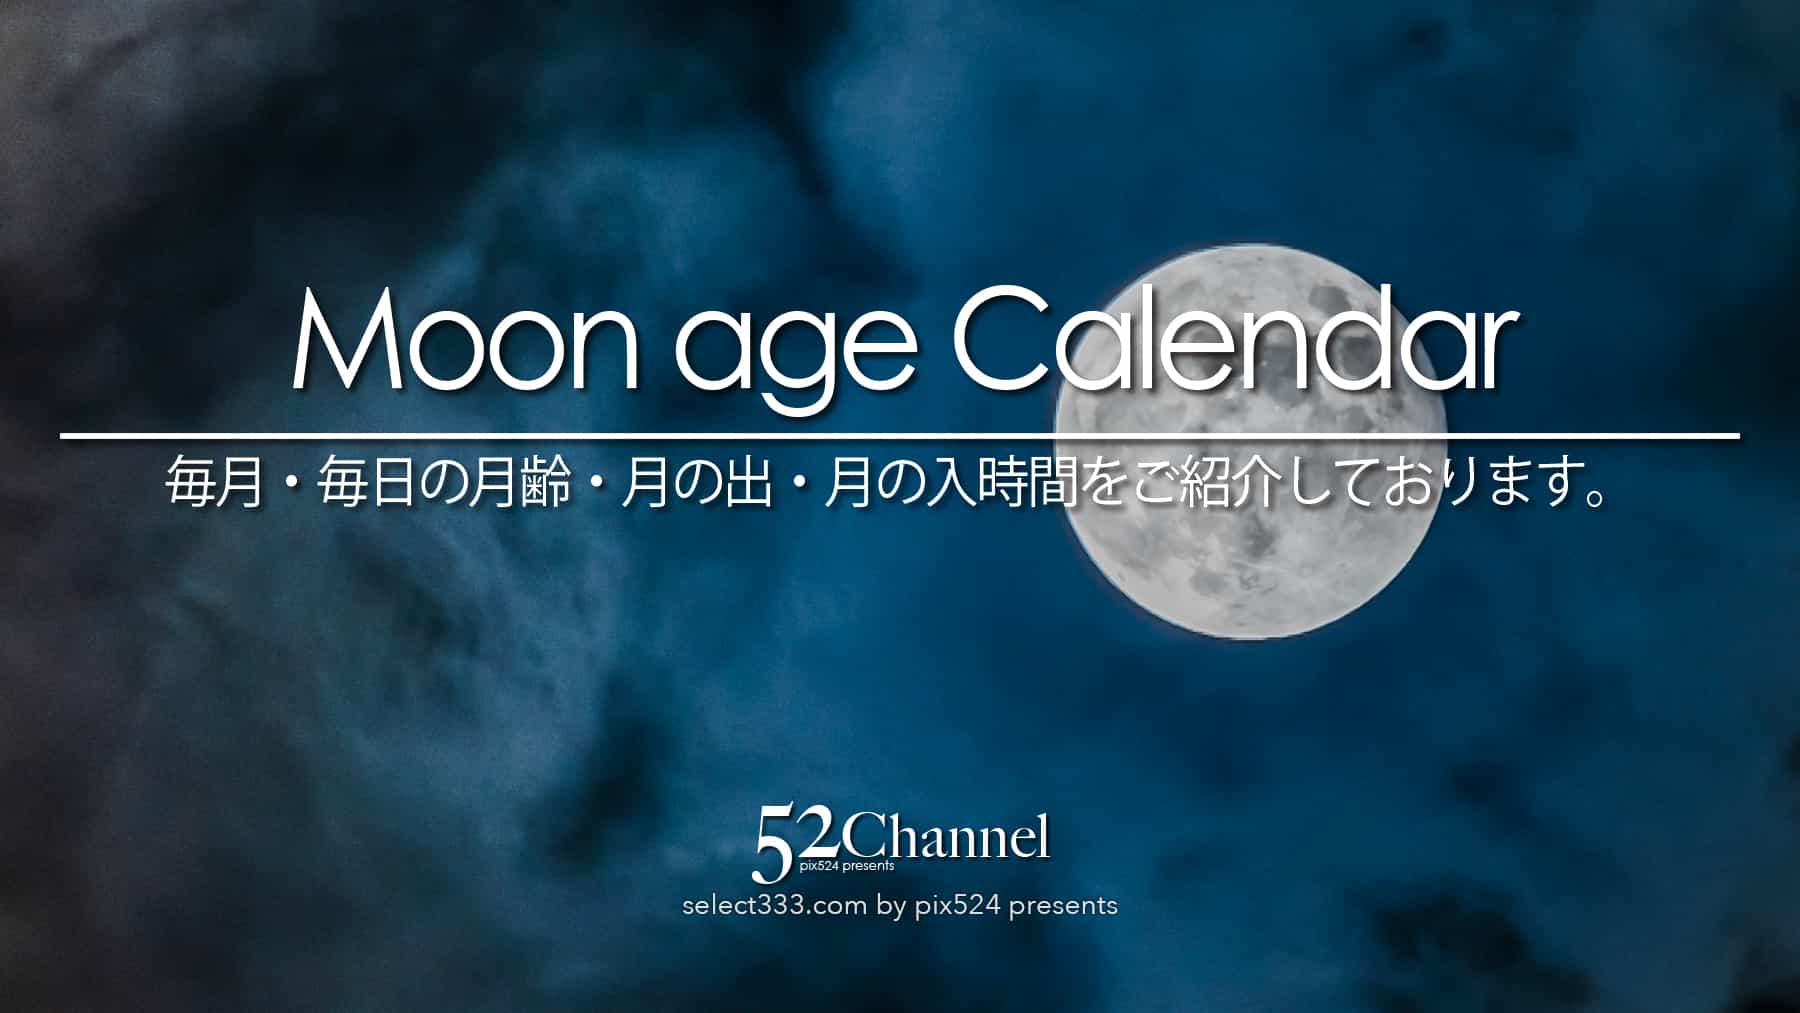 写真を楽しむブログ 撮影地と撮影方法｜月齢カレンダー：毎月の月の撮影候補日時を紹介しています。月は毎日見える形を変えて夜空で輝きます。月の観測や撮影はいつも楽しめます。：writing and Photo by pix524:Masaya Konishi （小西雅哉）写真を楽しむブログ 主宰